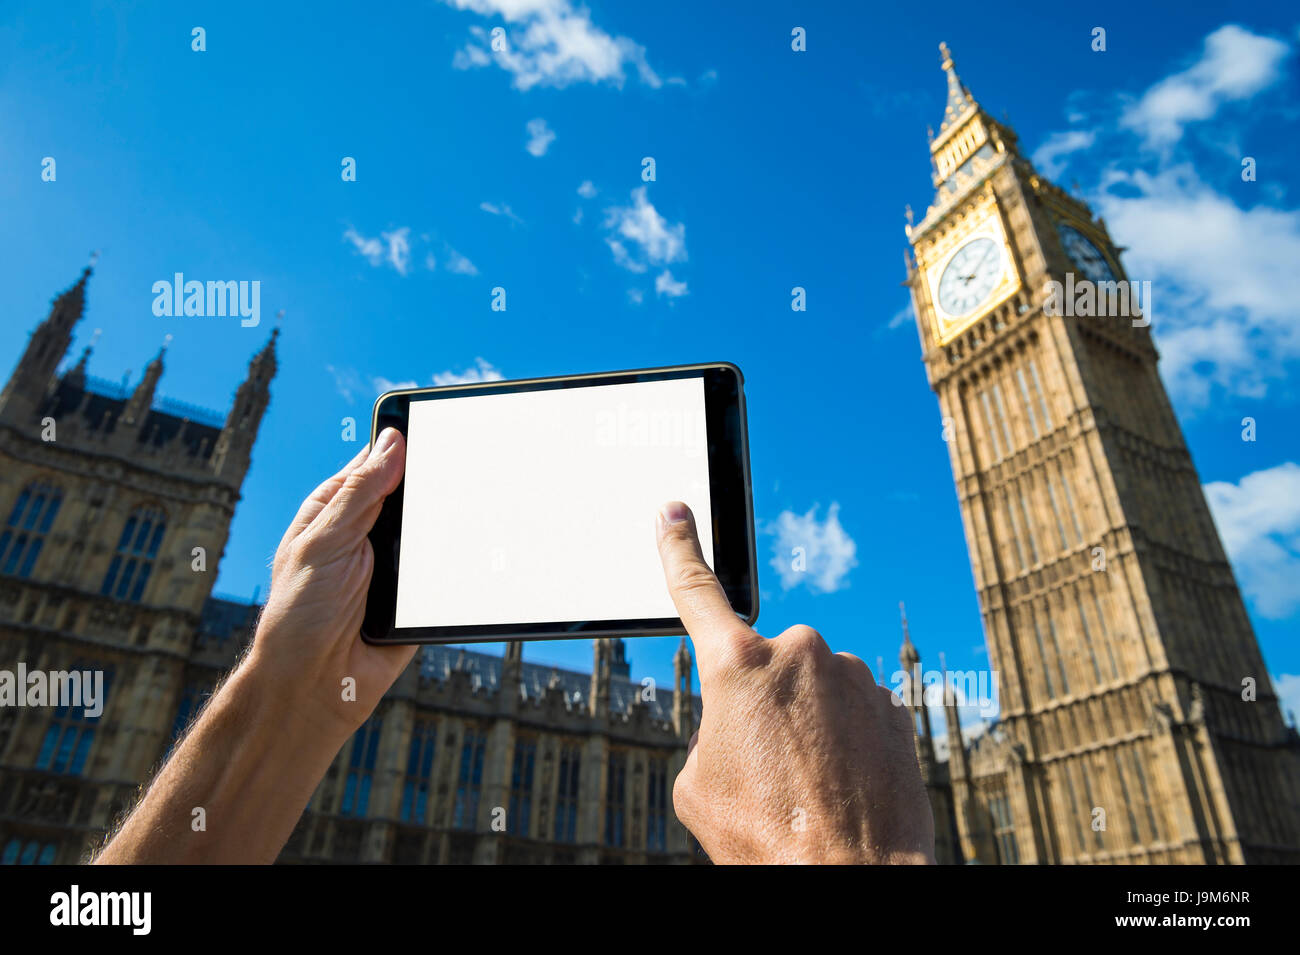 Toucher la main de l'écran tablette vide en face de Big Ben et le Palais de Westminster à Londres sous un ciel bleu lumineux Banque D'Images